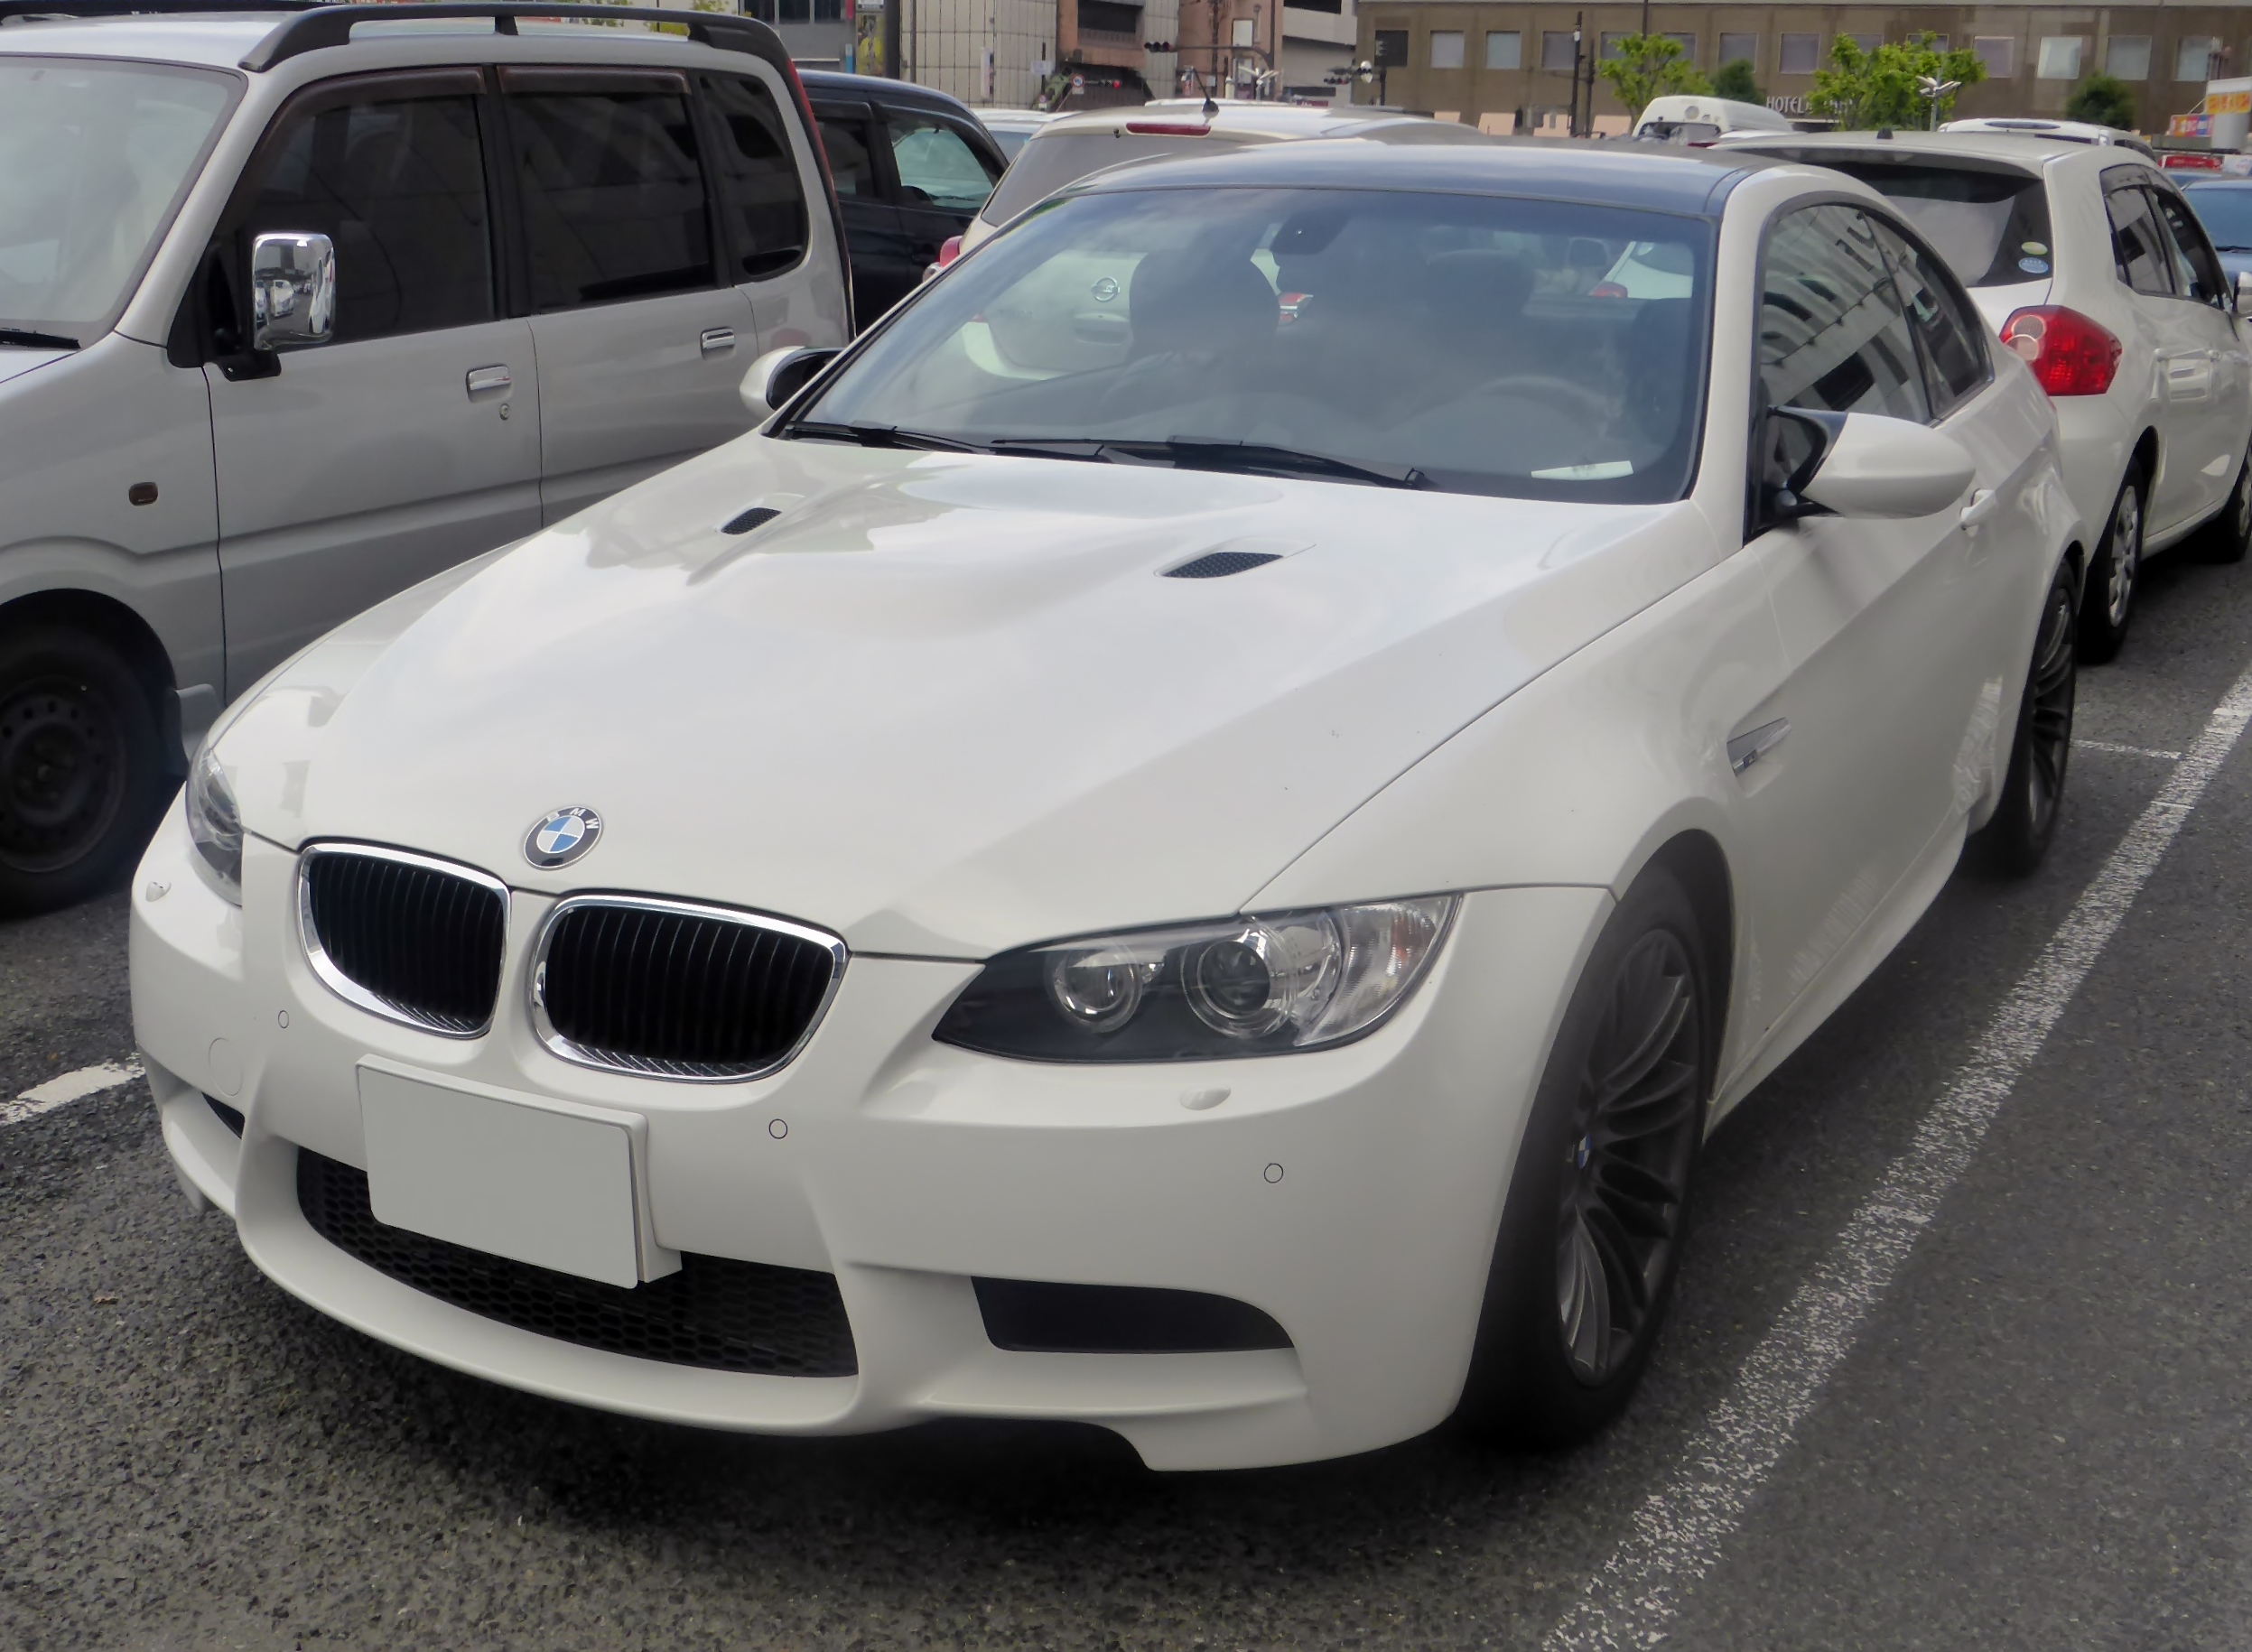 BMW E92 - Wikidata